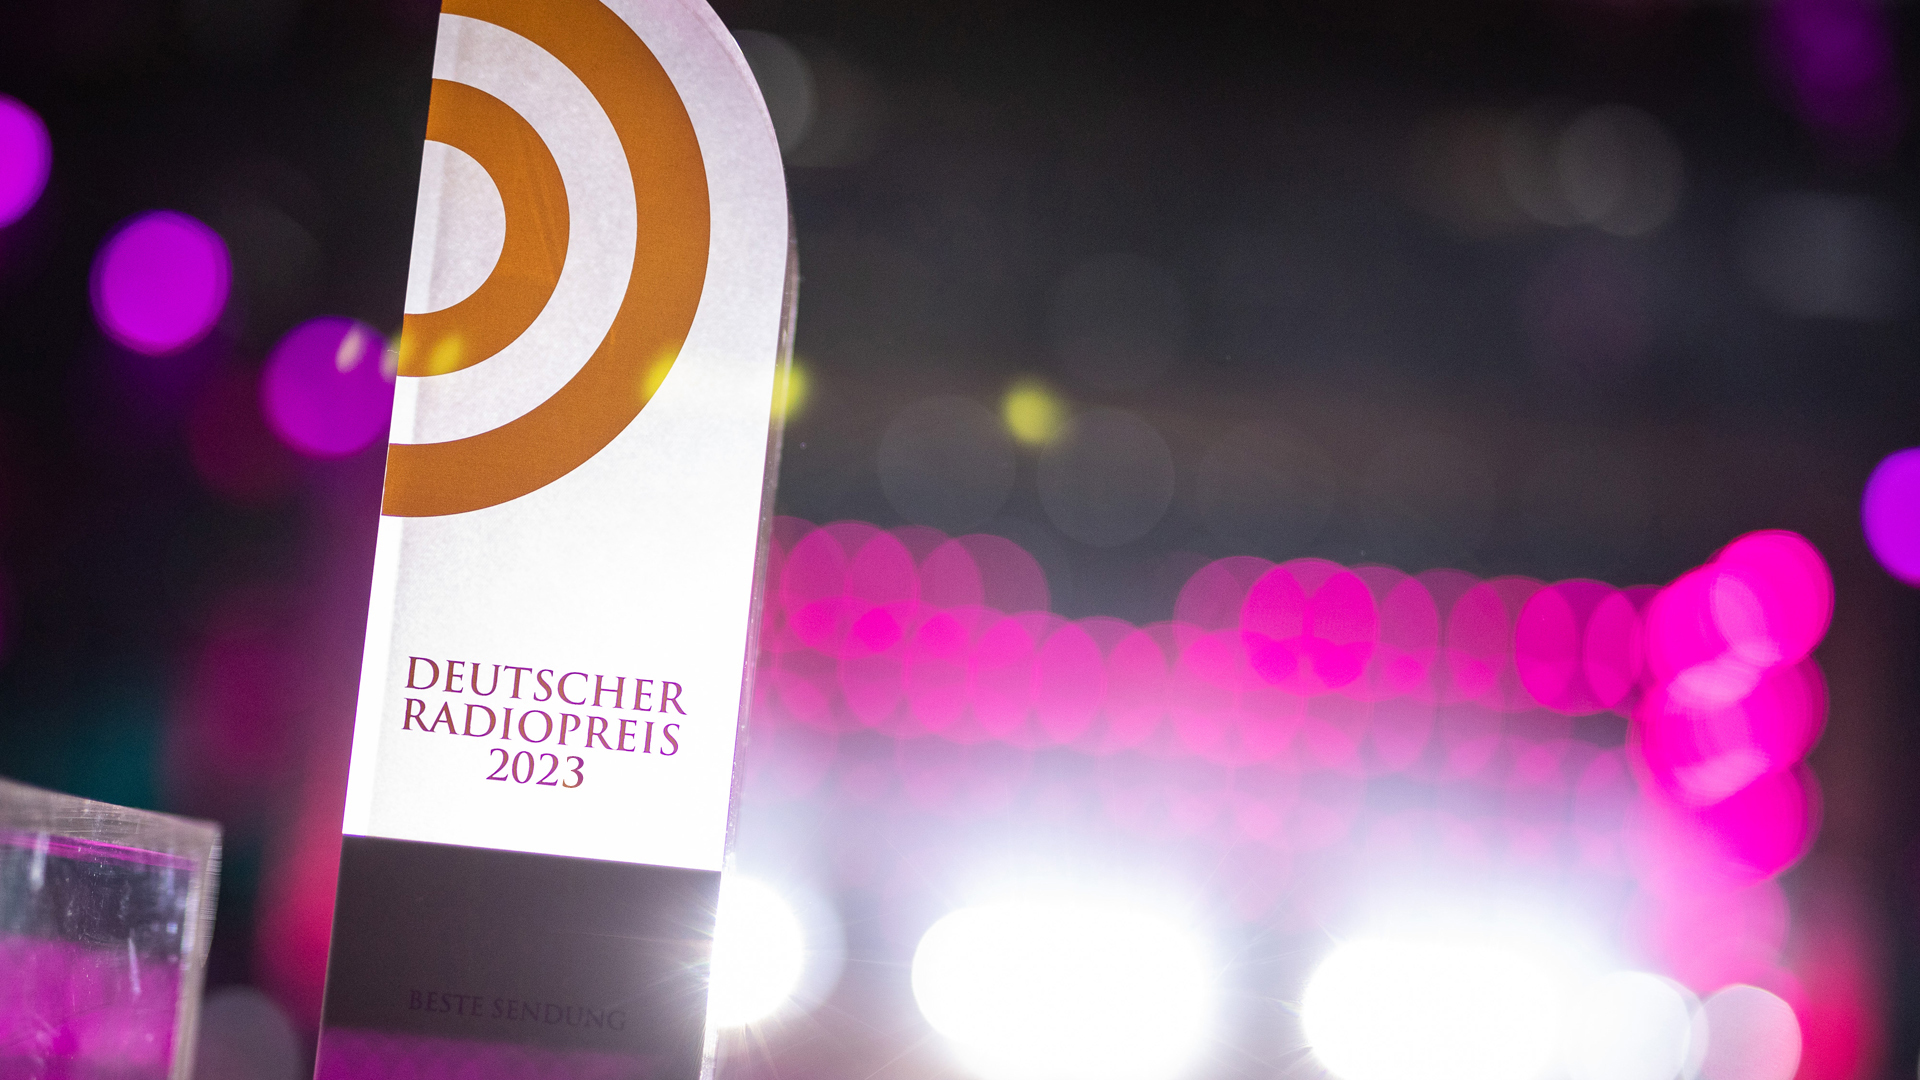 Der Deutsche Radiopreis 2023 wird am 07. September verliehen